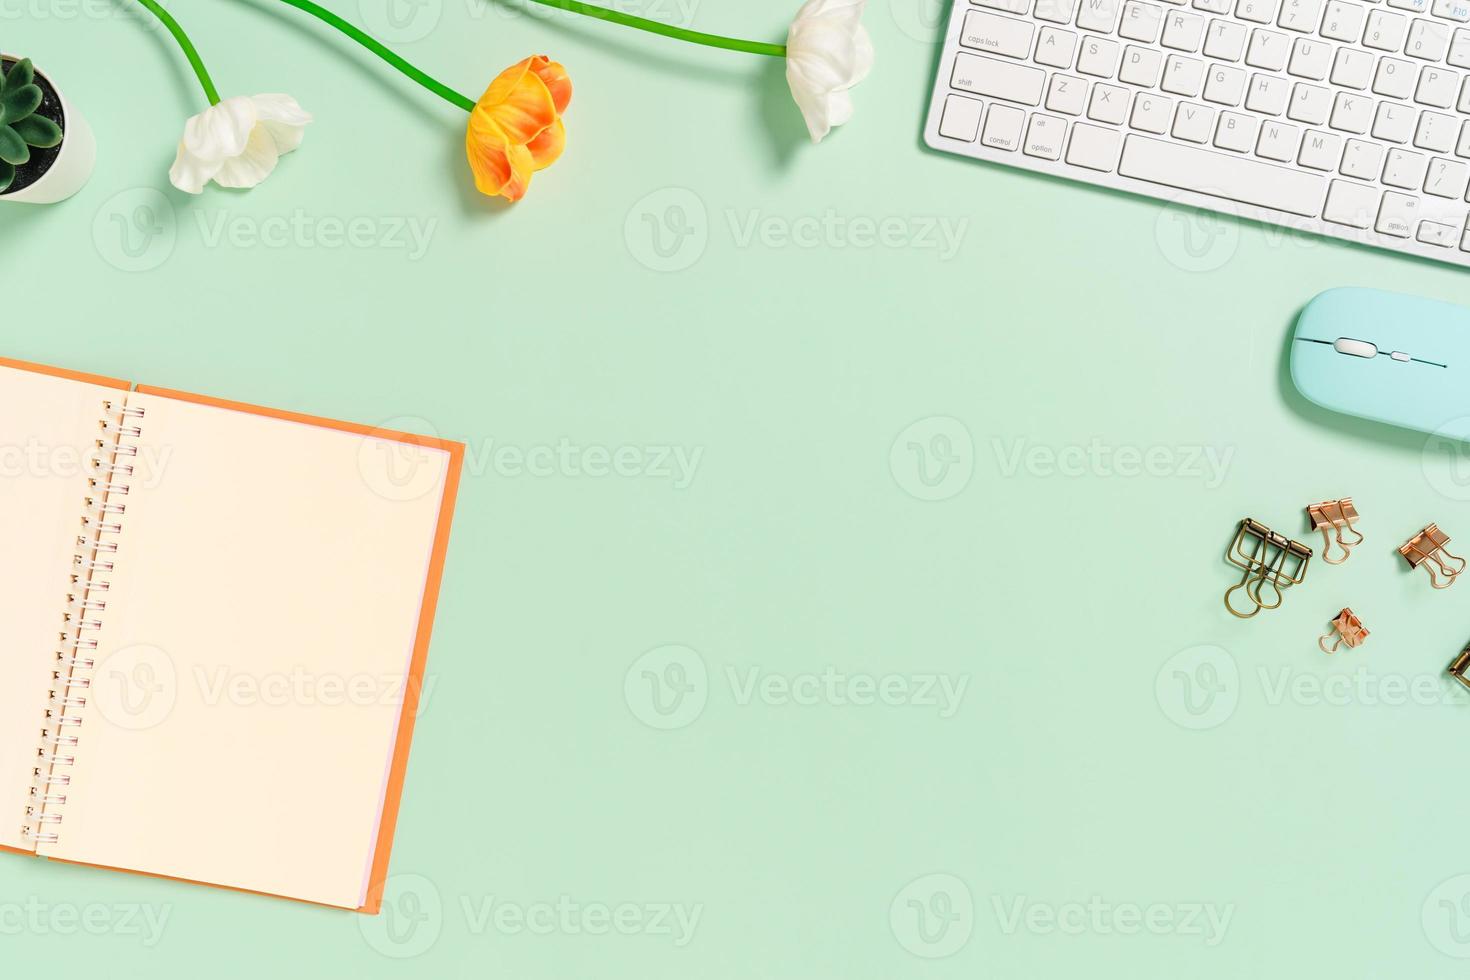 kreatives flaches Laienfoto des Arbeitsplatzschreibtisches. Schreibtisch von oben mit Tastatur, Maus und offenem schwarzen Notizbuch auf pastellgrünem Hintergrund. Draufsichtmodell mit Kopienraumfotografie. foto